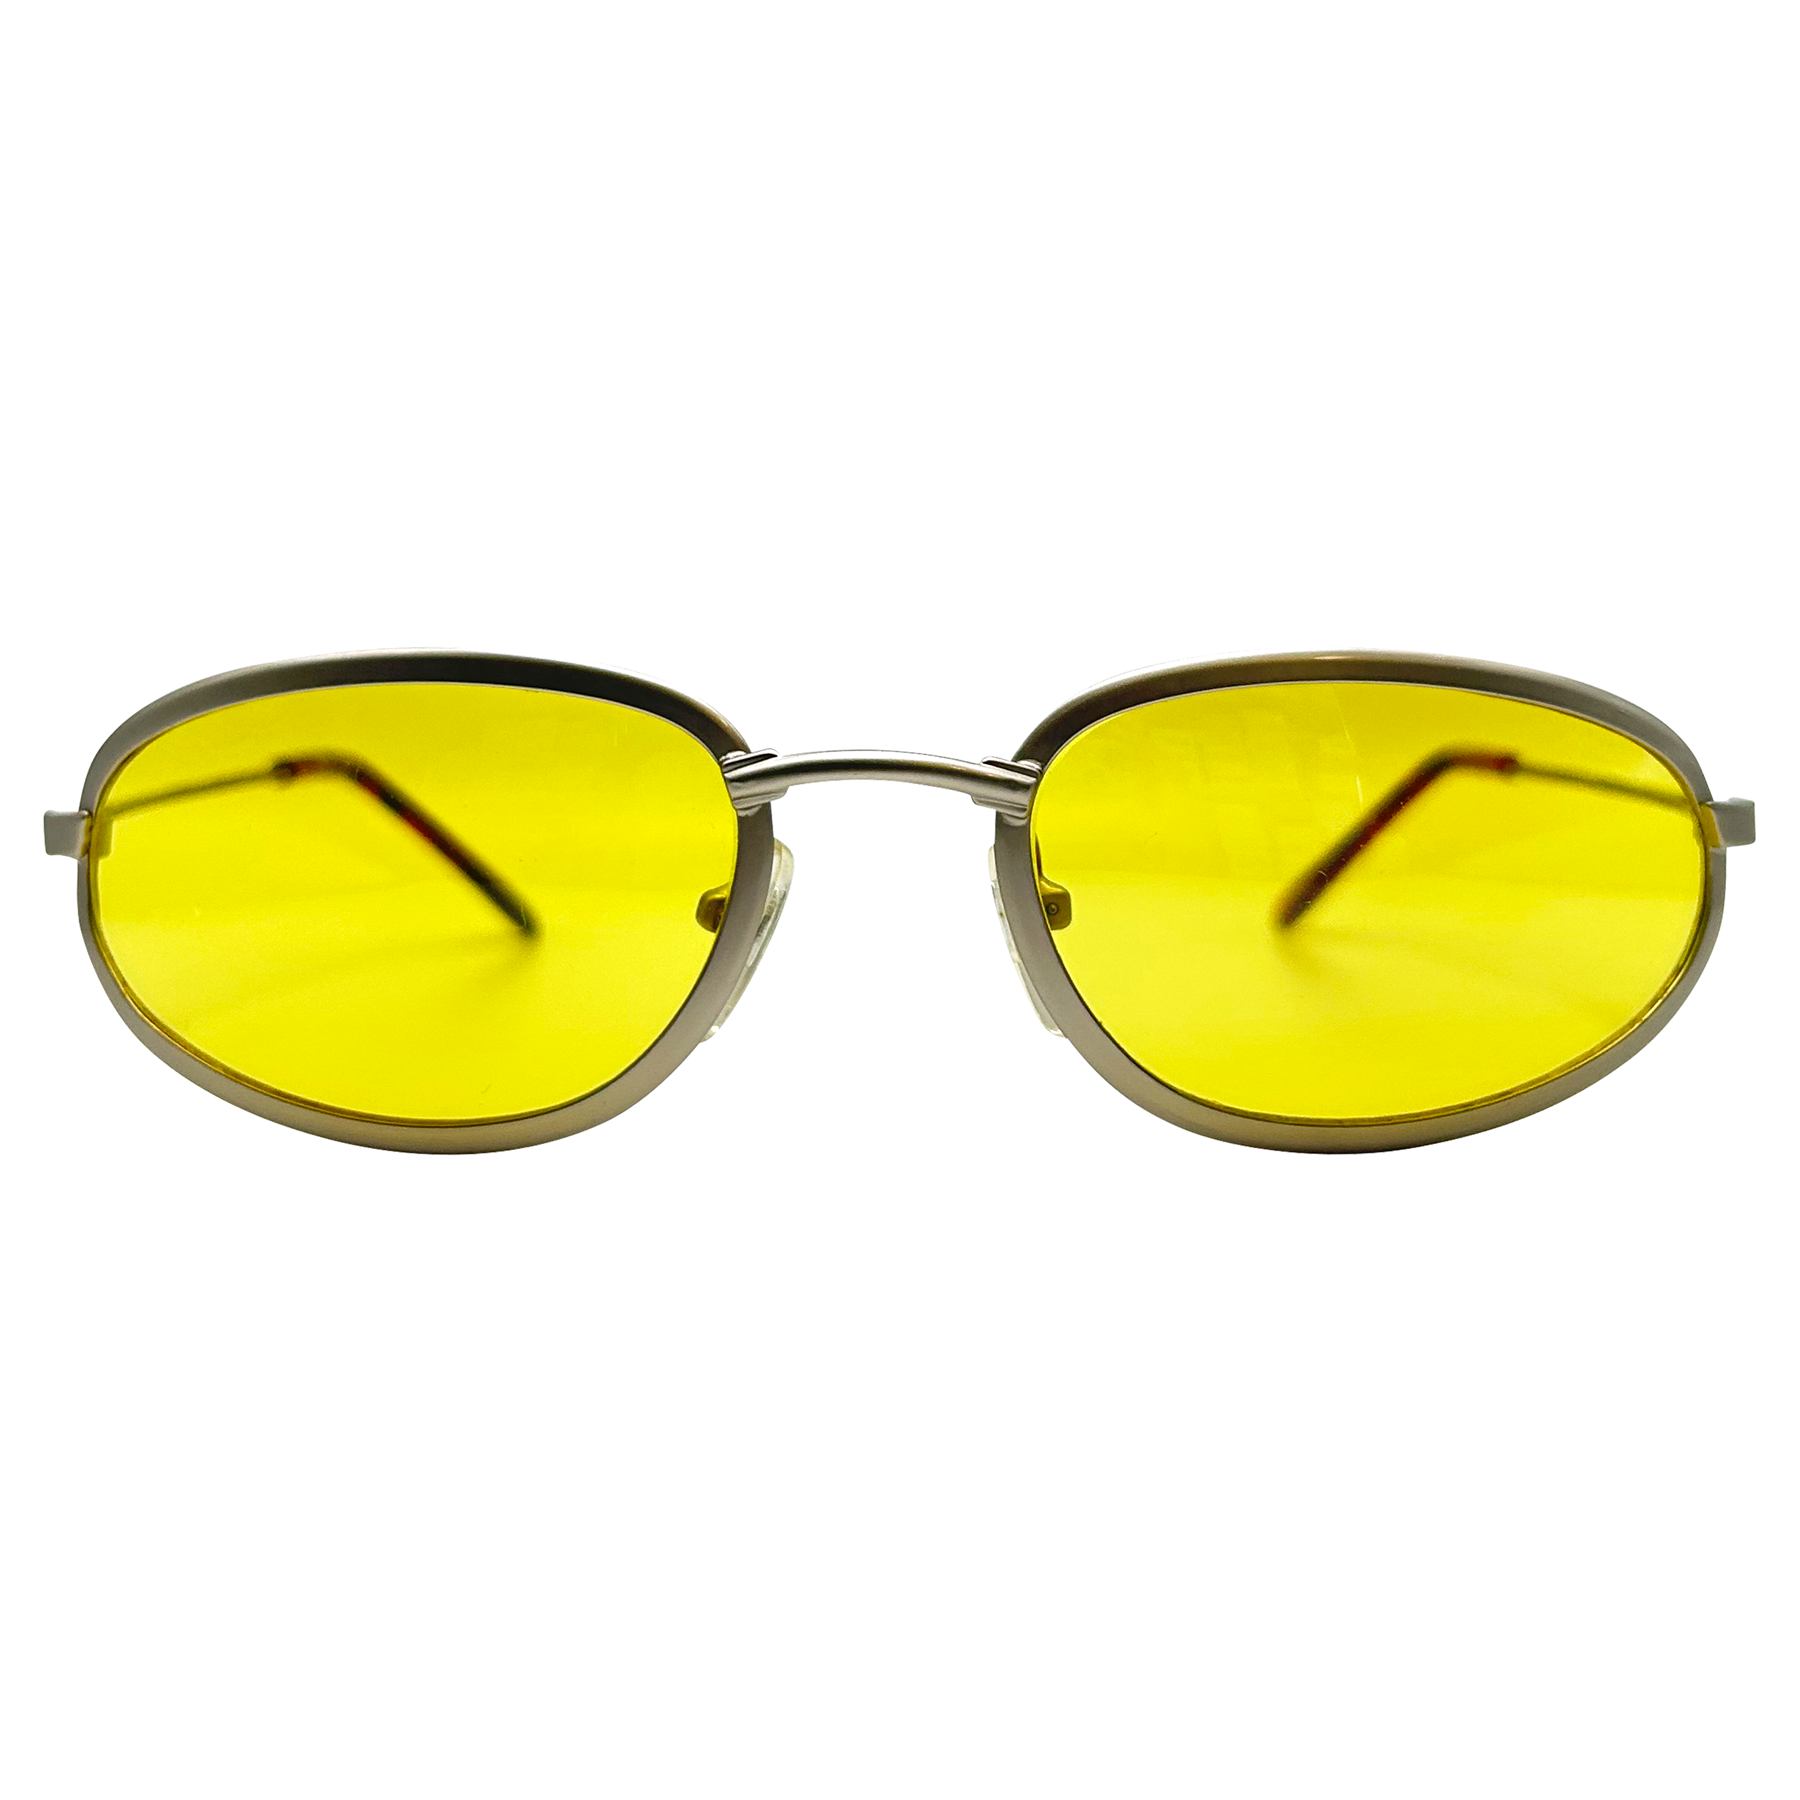 TWEETY Round Sunglasses | Blue-Blocker | Night Driving